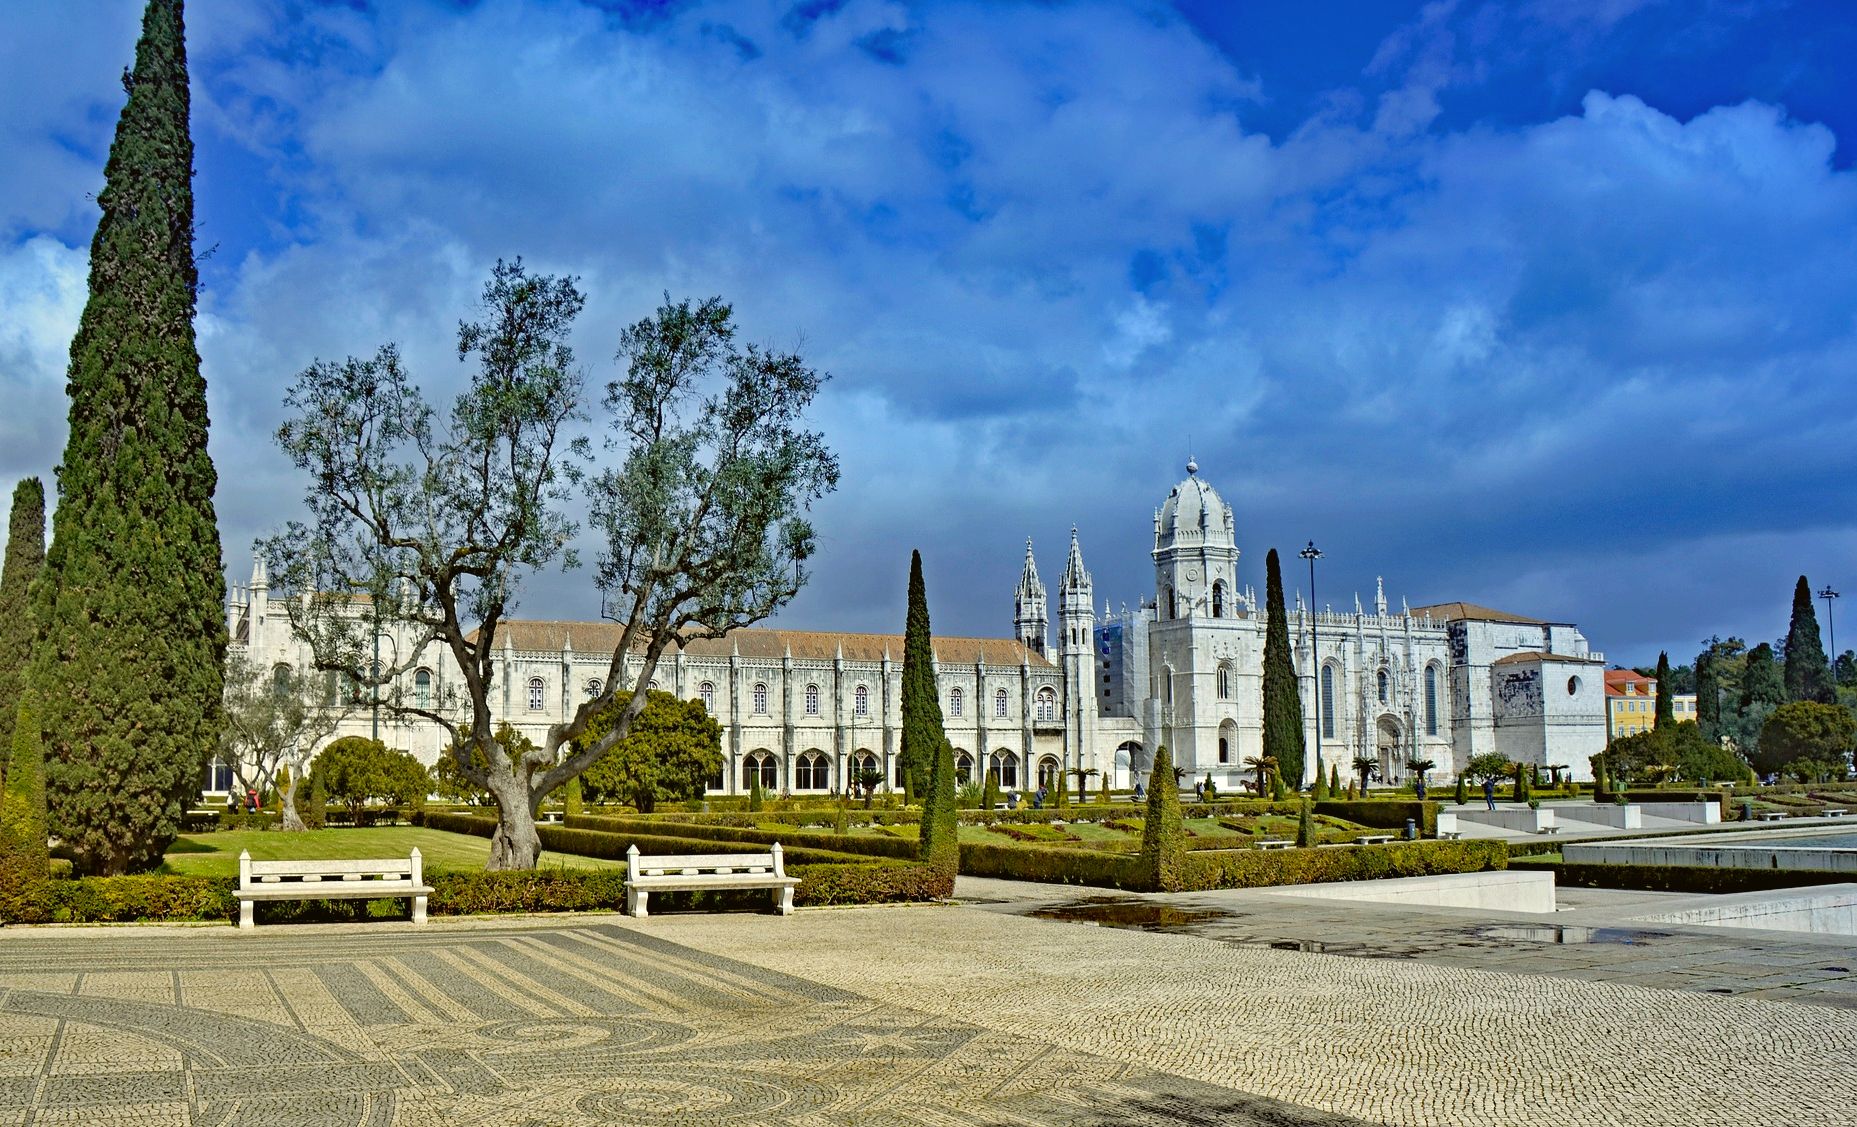 Mosteiro dos Jerónimos in Lisbon 